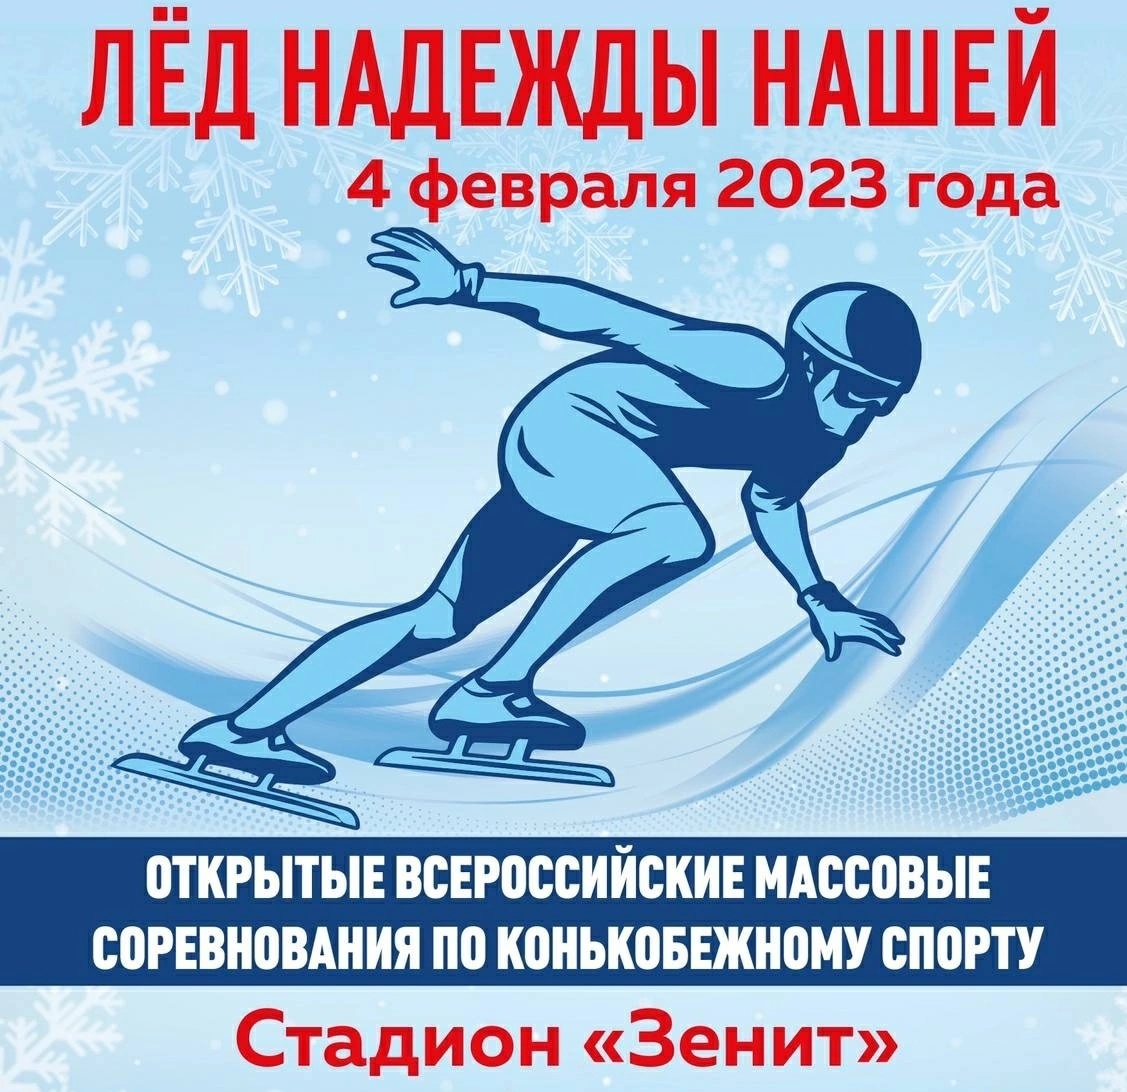 Всероссийские массовые соревнованияя по конькобежному спорту &amp;laquo;Лёд надежды нашей&amp;raquo;